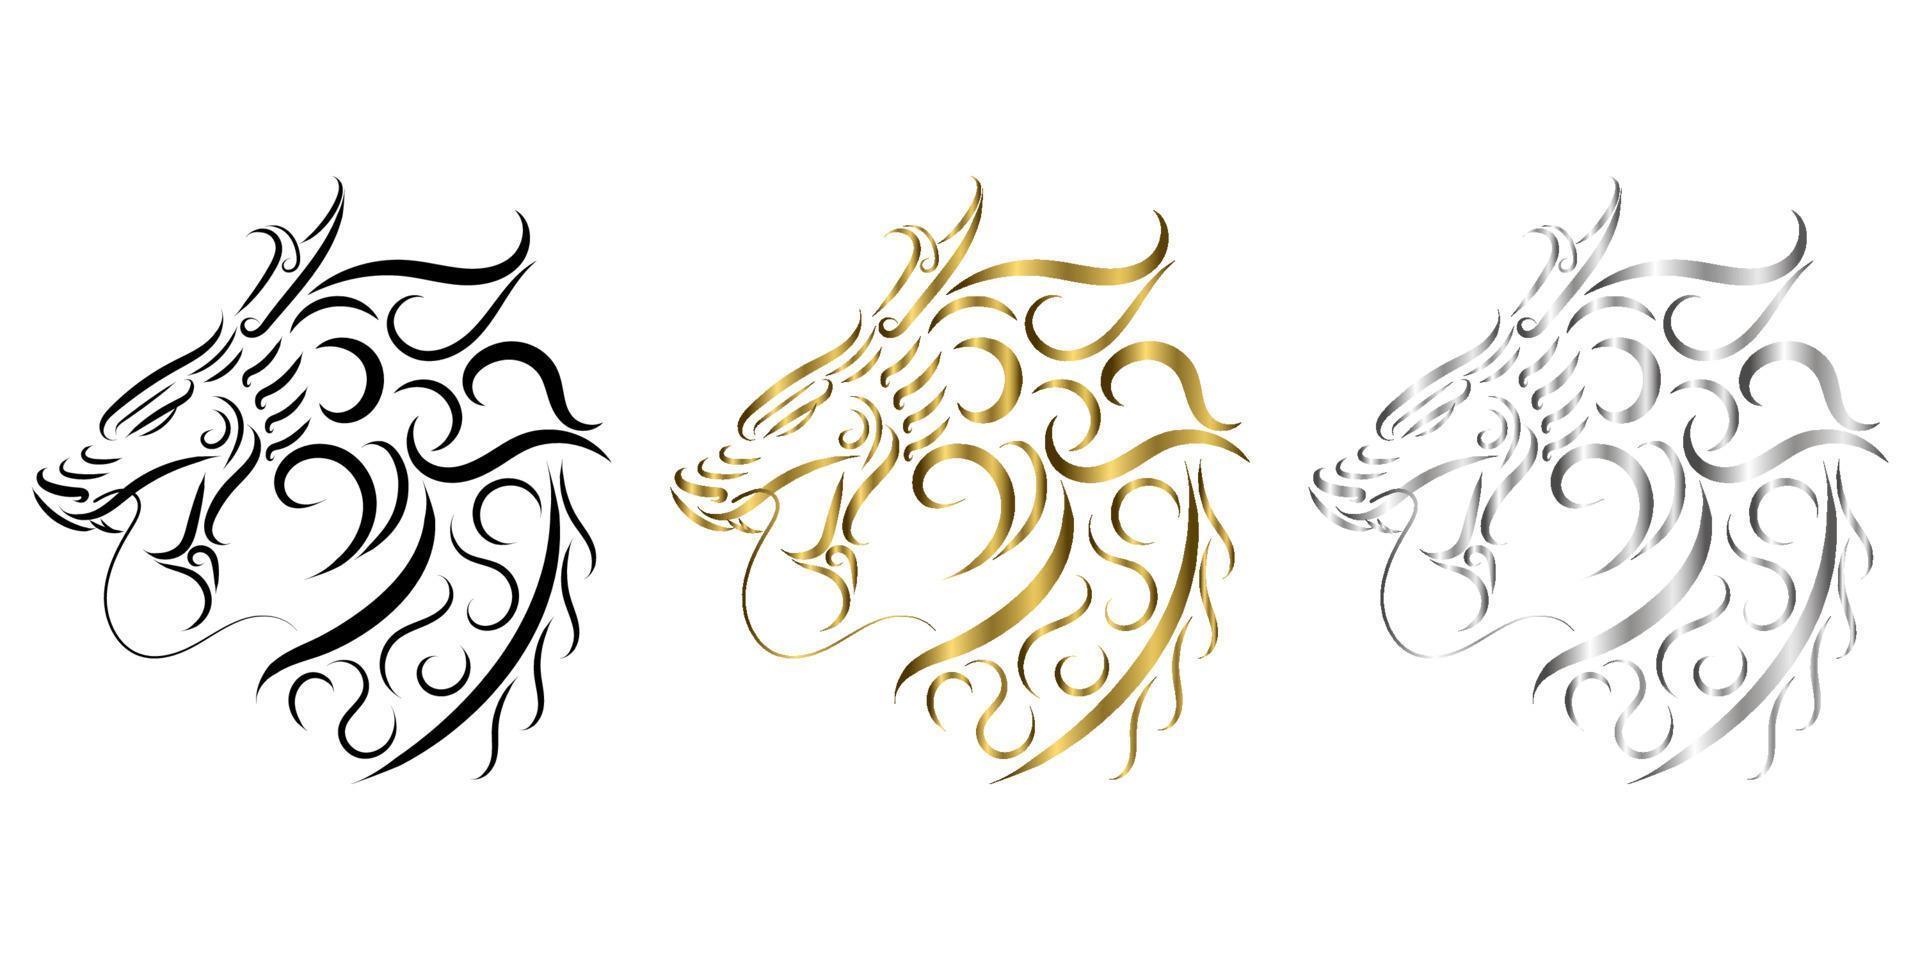 Três cores de ouro preto e arte de linha de prata da cabeça do dragão. vetor